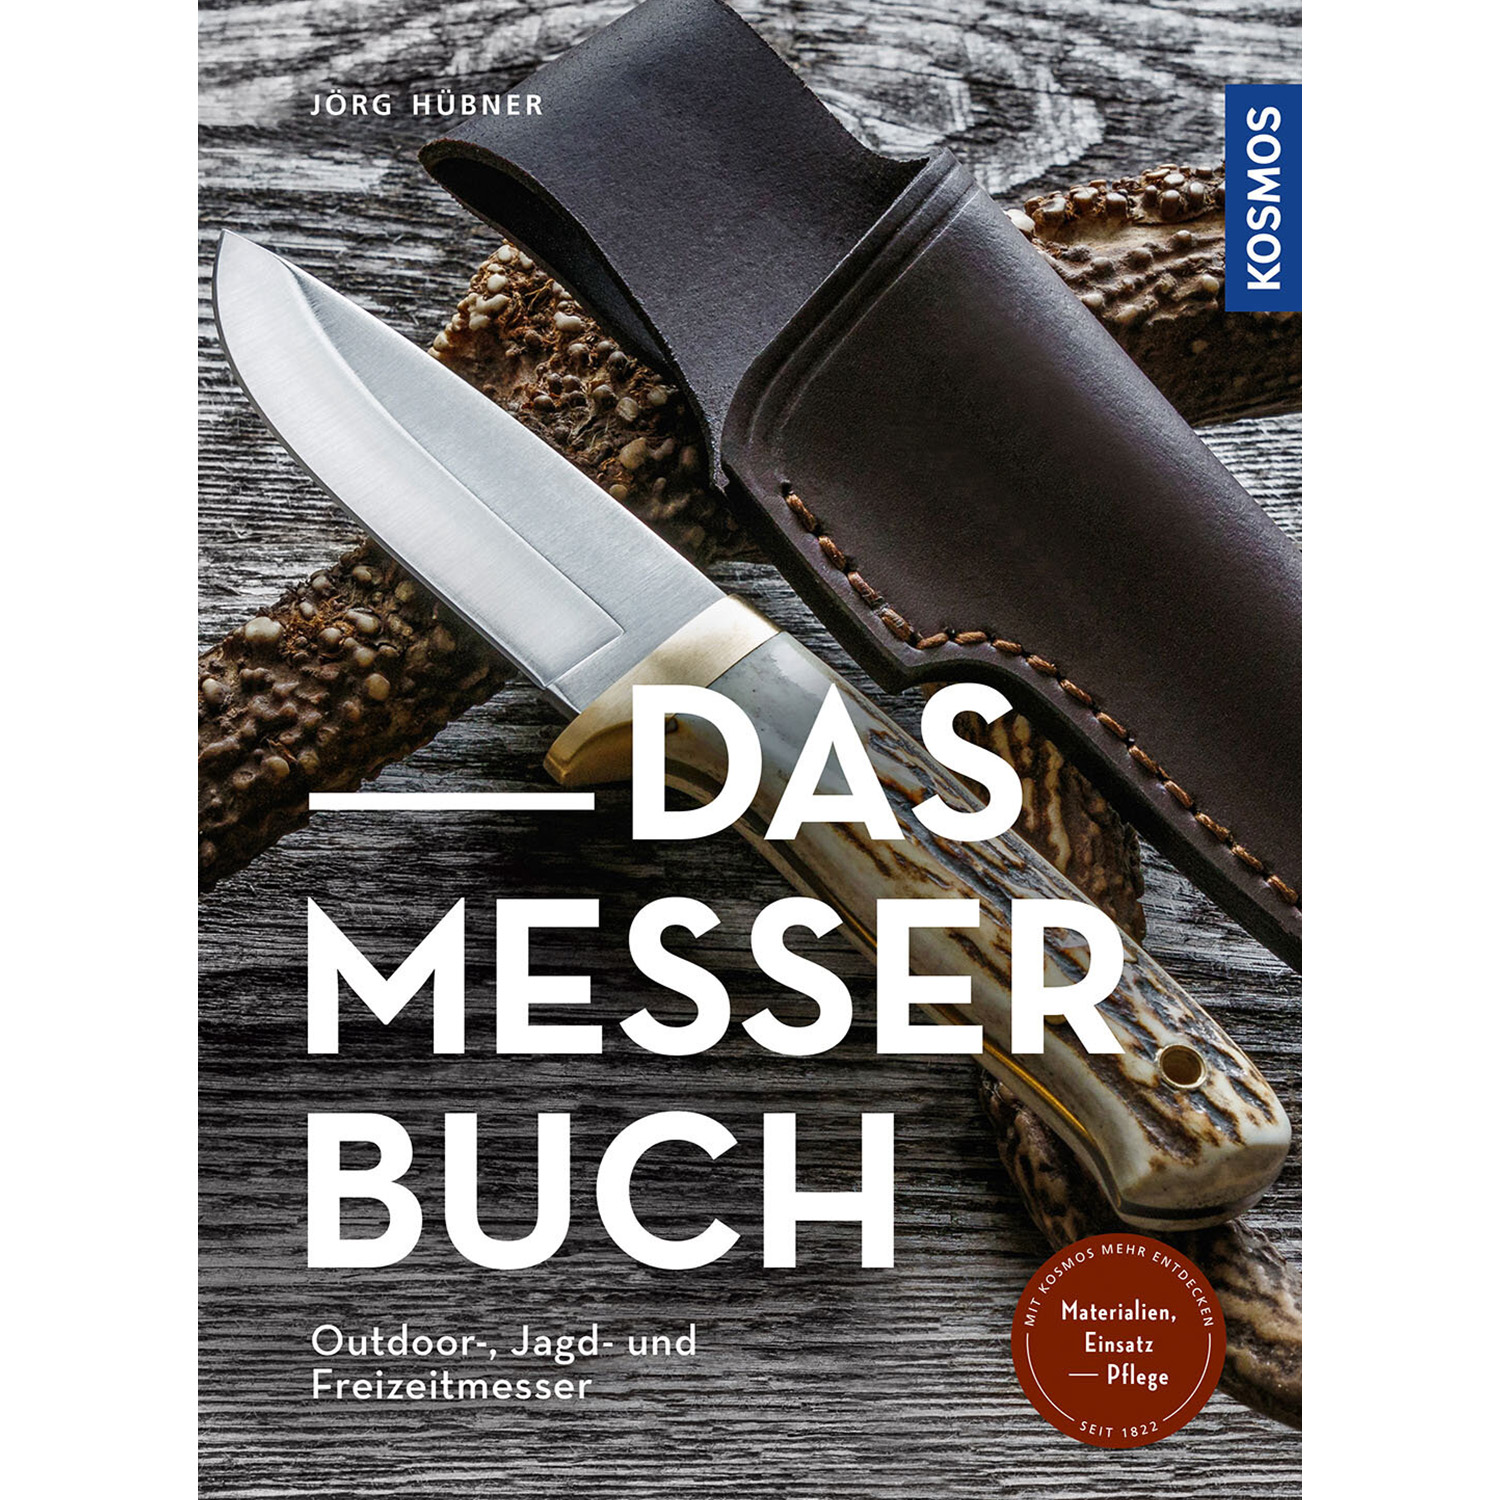 Das Messer Buch - Buch - Jörg Hübner - Jagdausrüstung